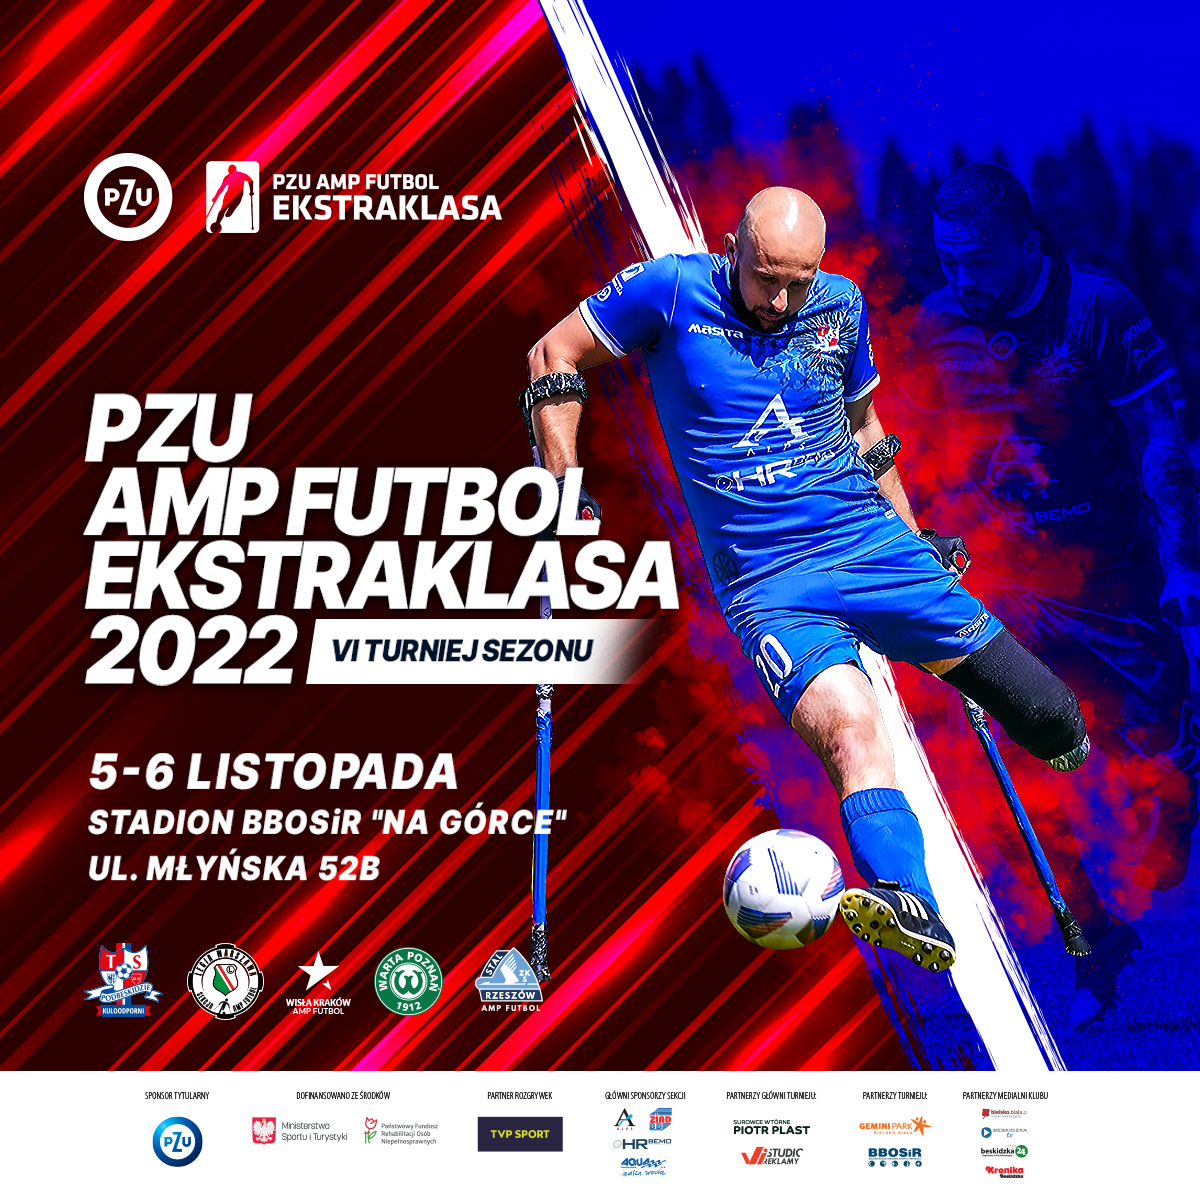 Finałowy turniej PZU Amp Futbol Ekstraklasy w Bielsku-Białej!